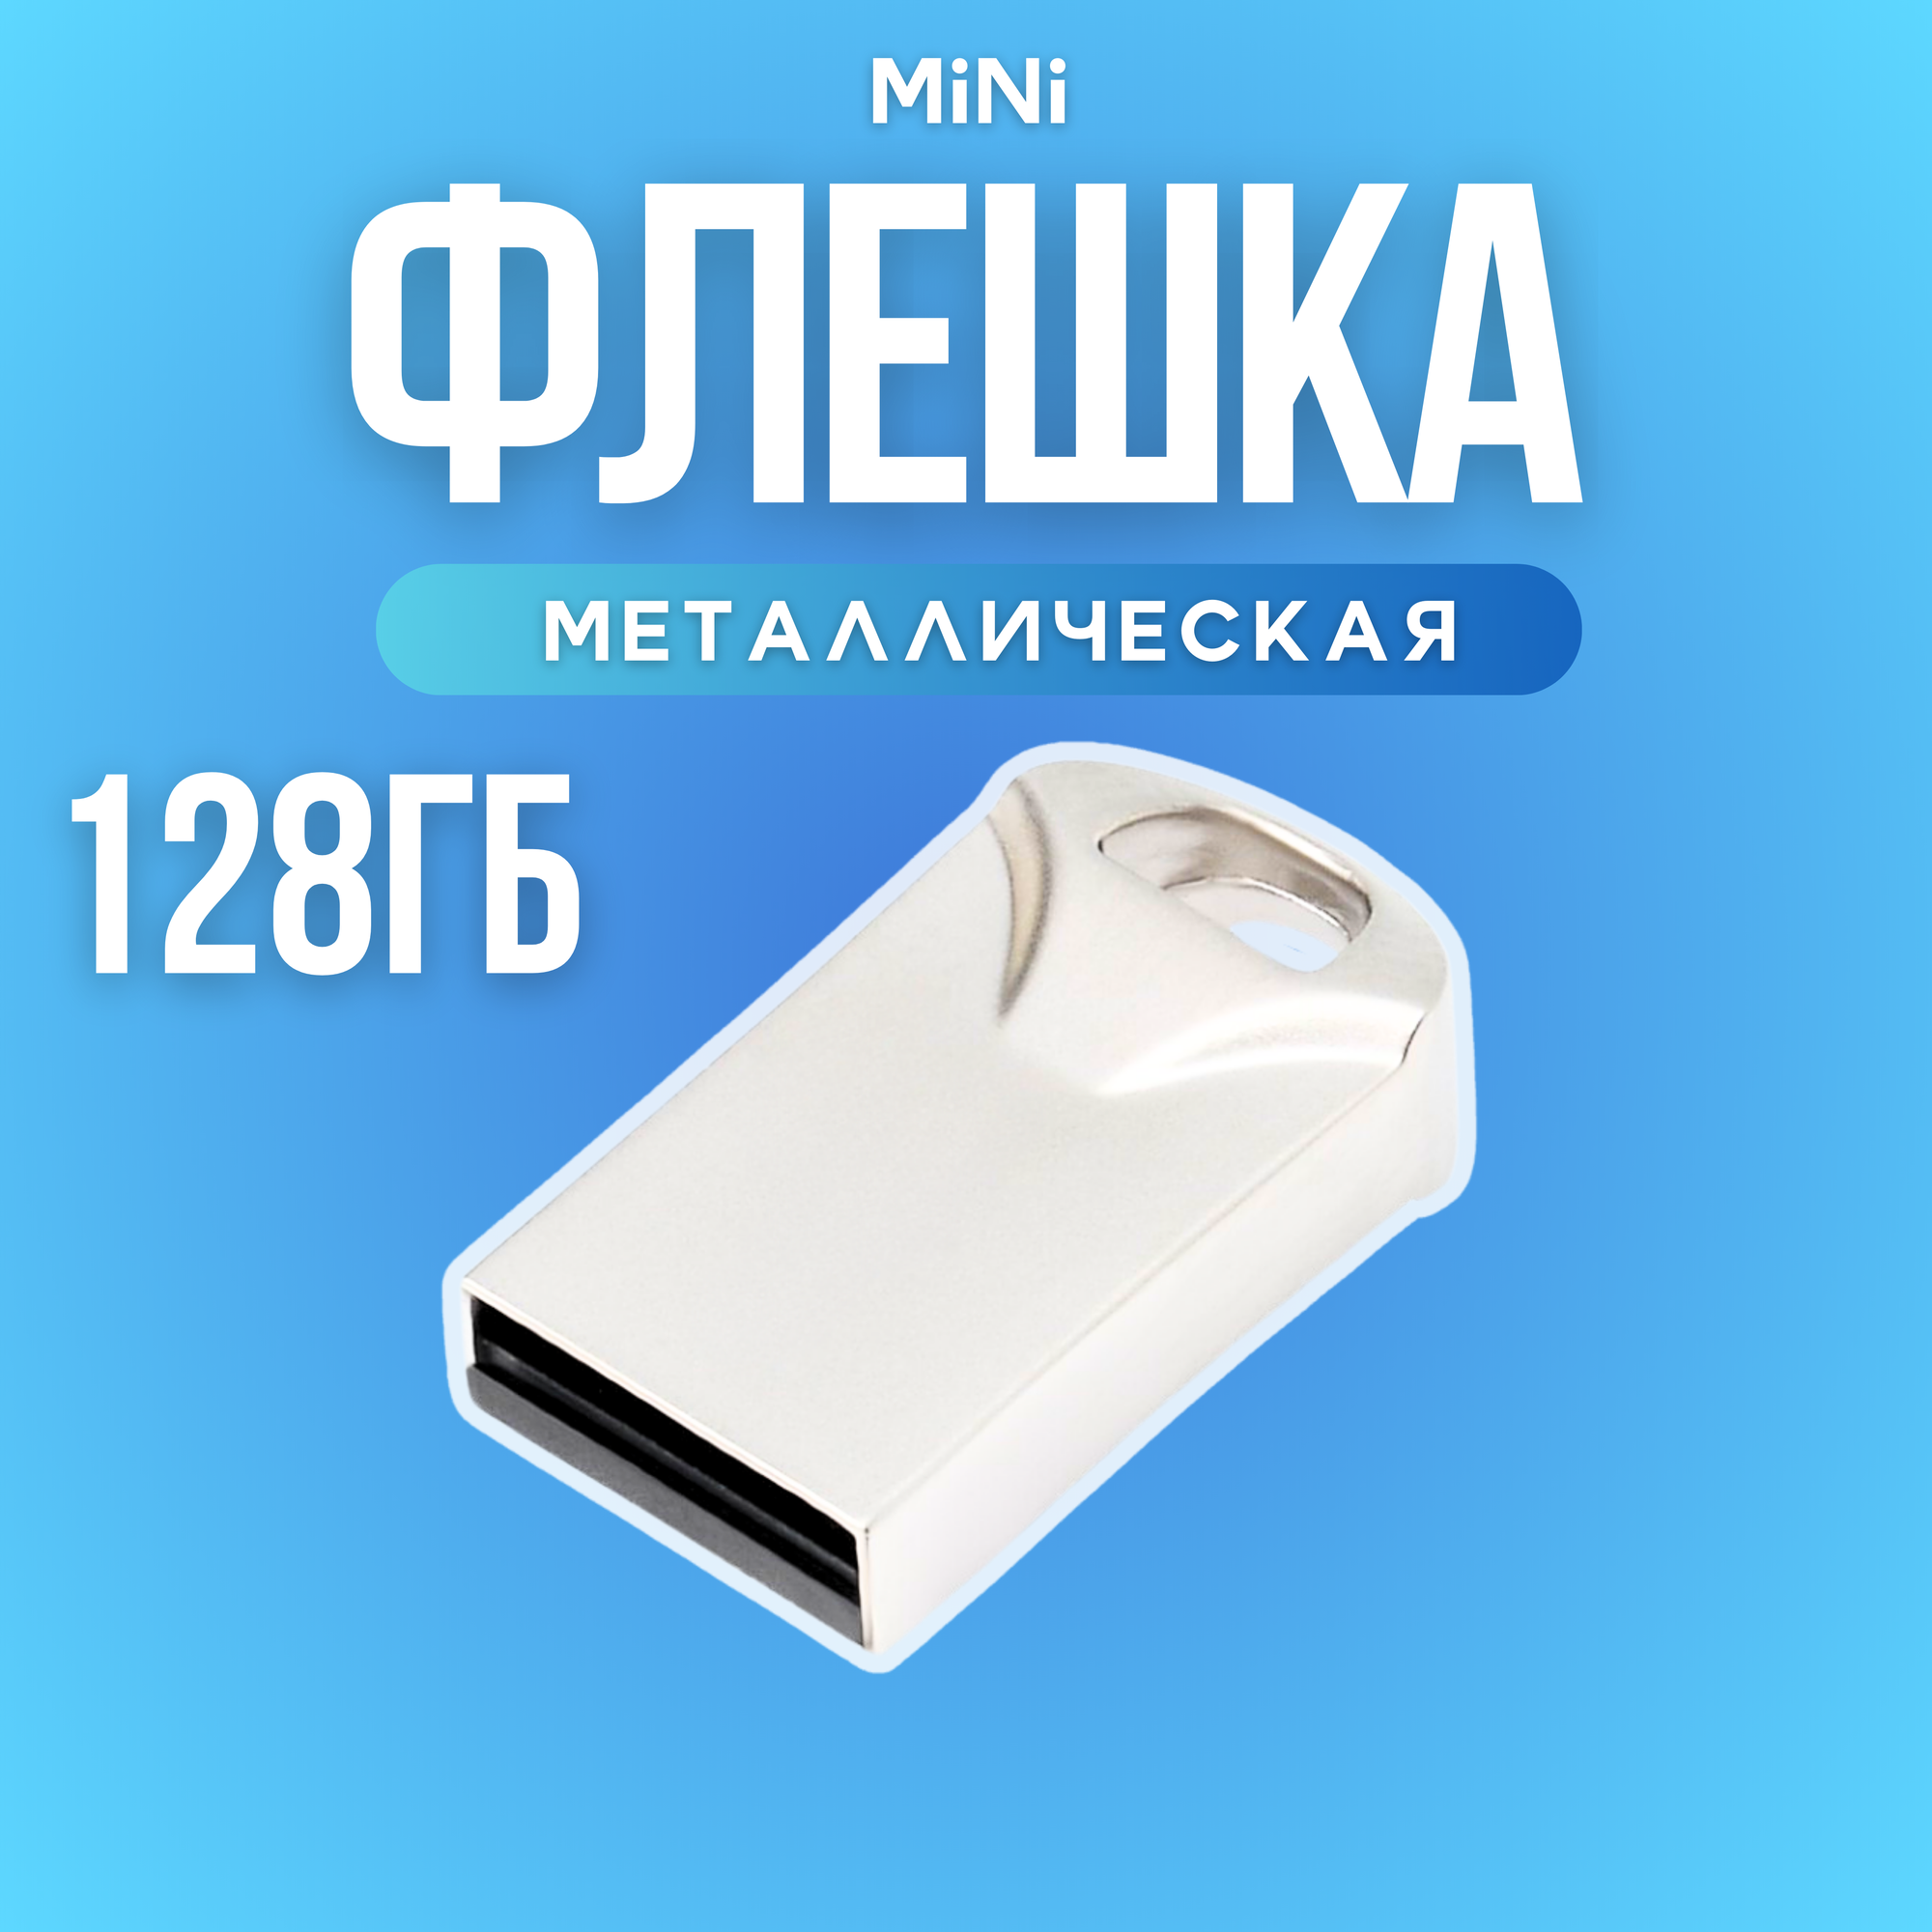 Флешка Bestoss USB 2.0 128 ГБ